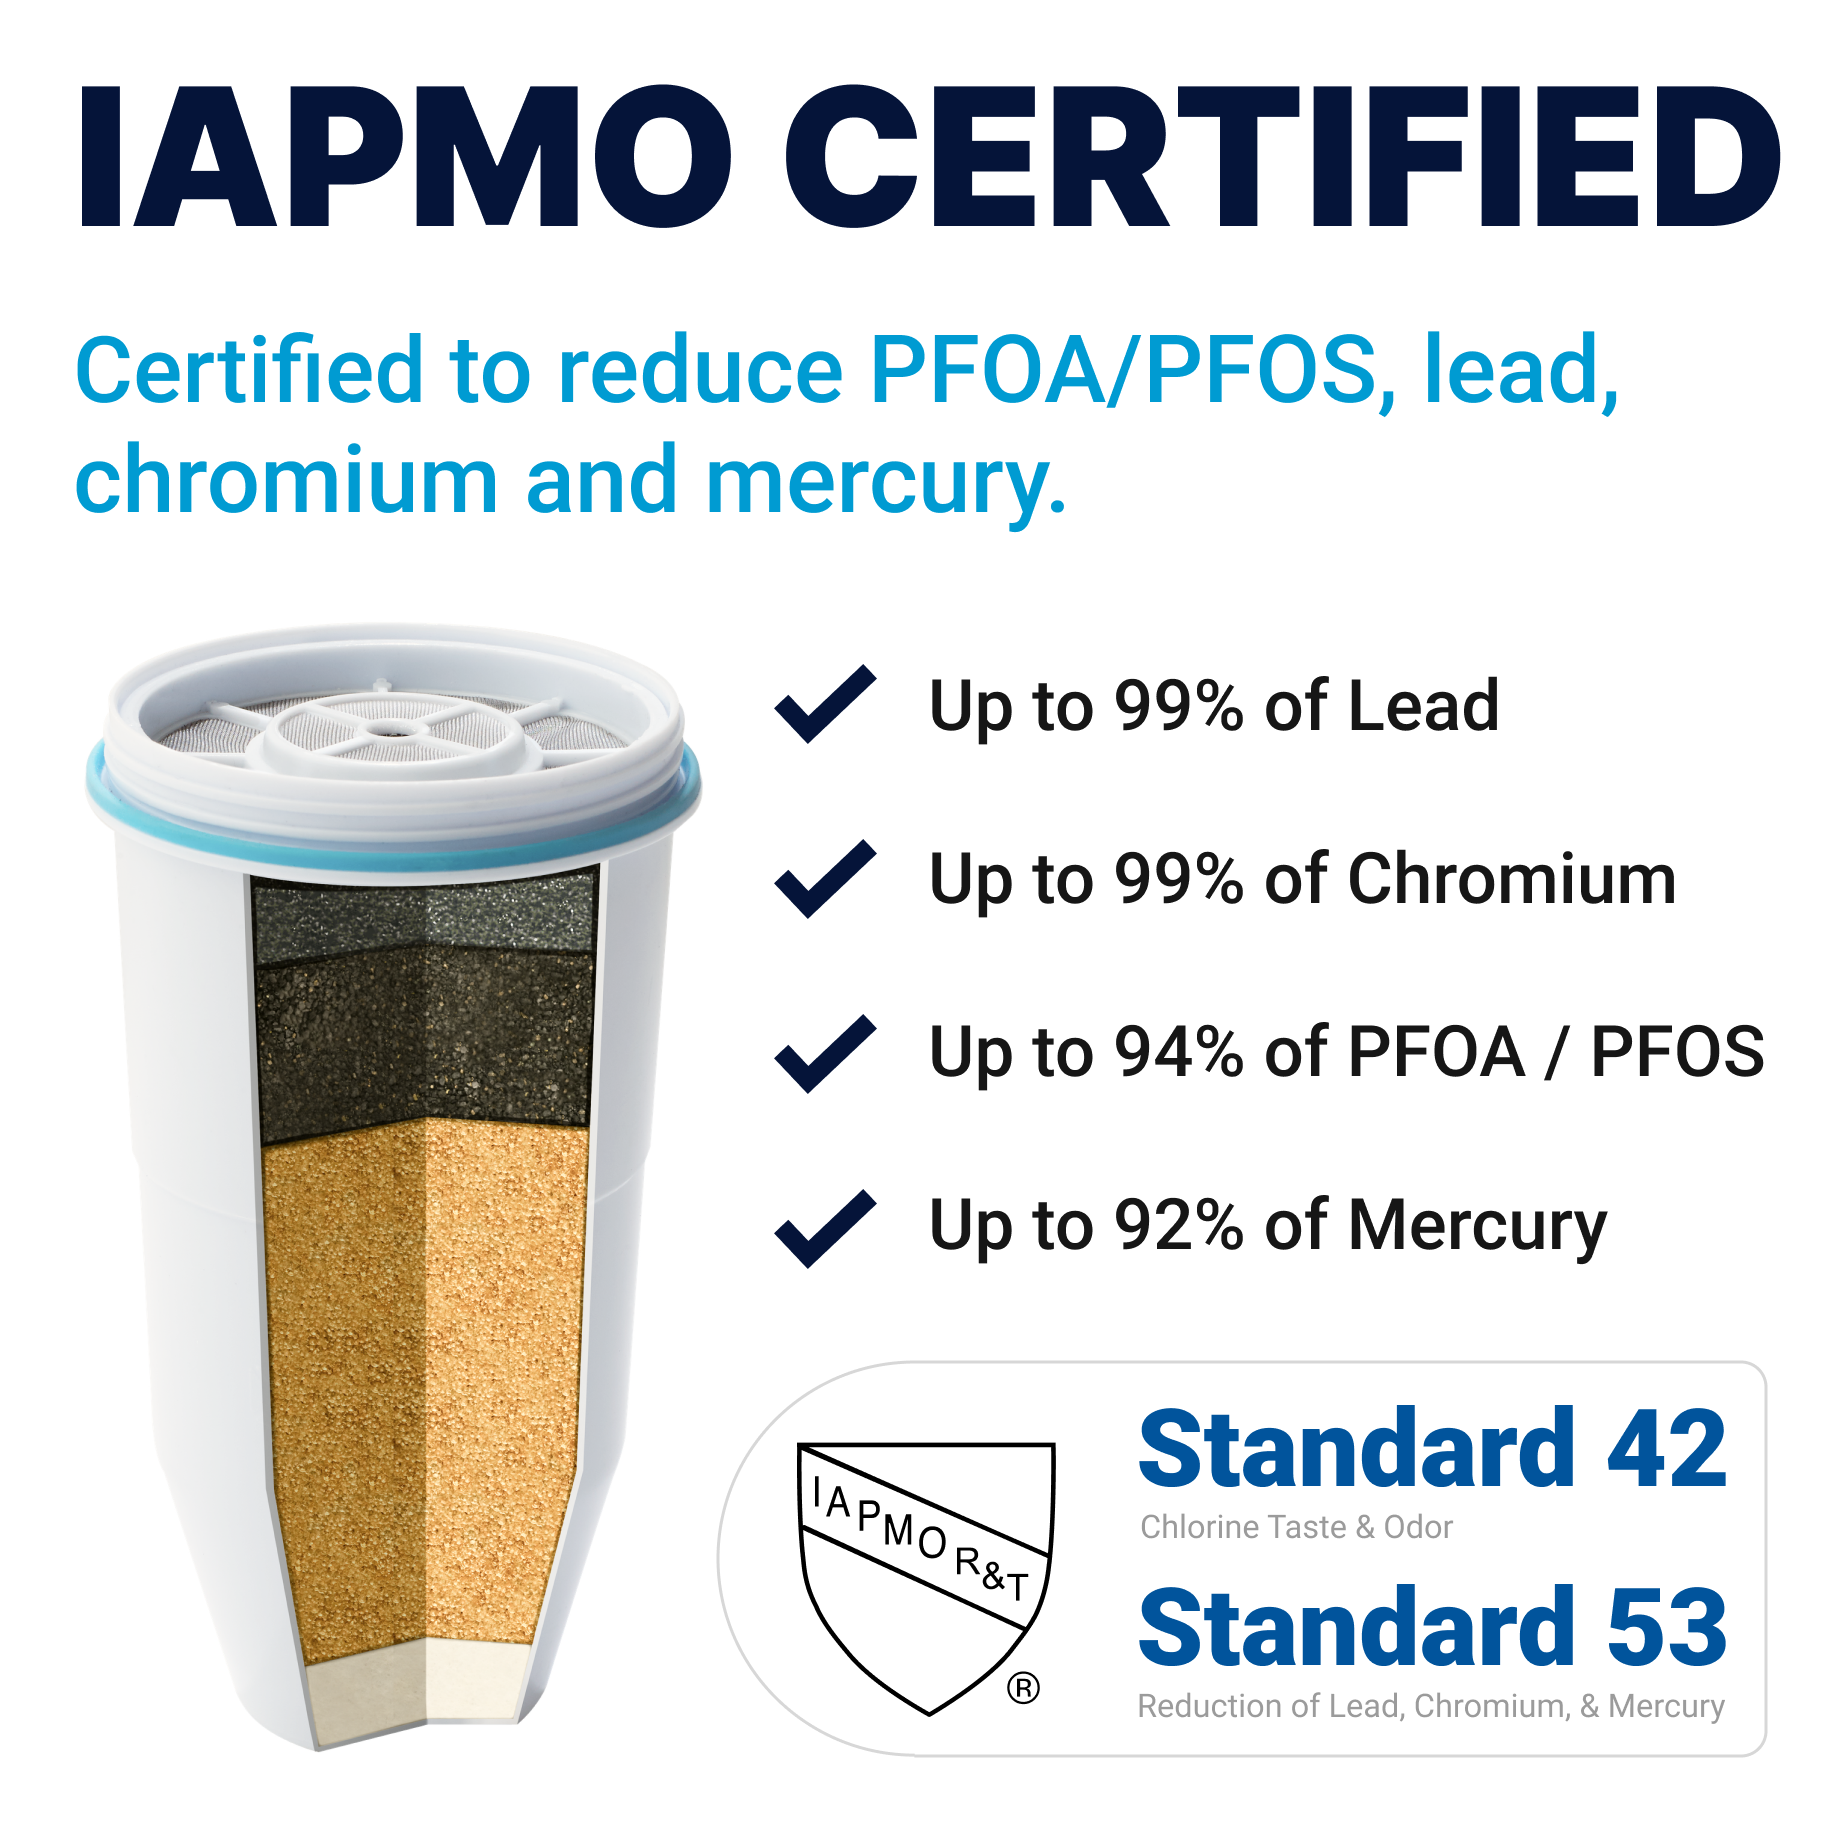 iapmo certified to redue PFOA/PFOS, lead, chromium and mercury